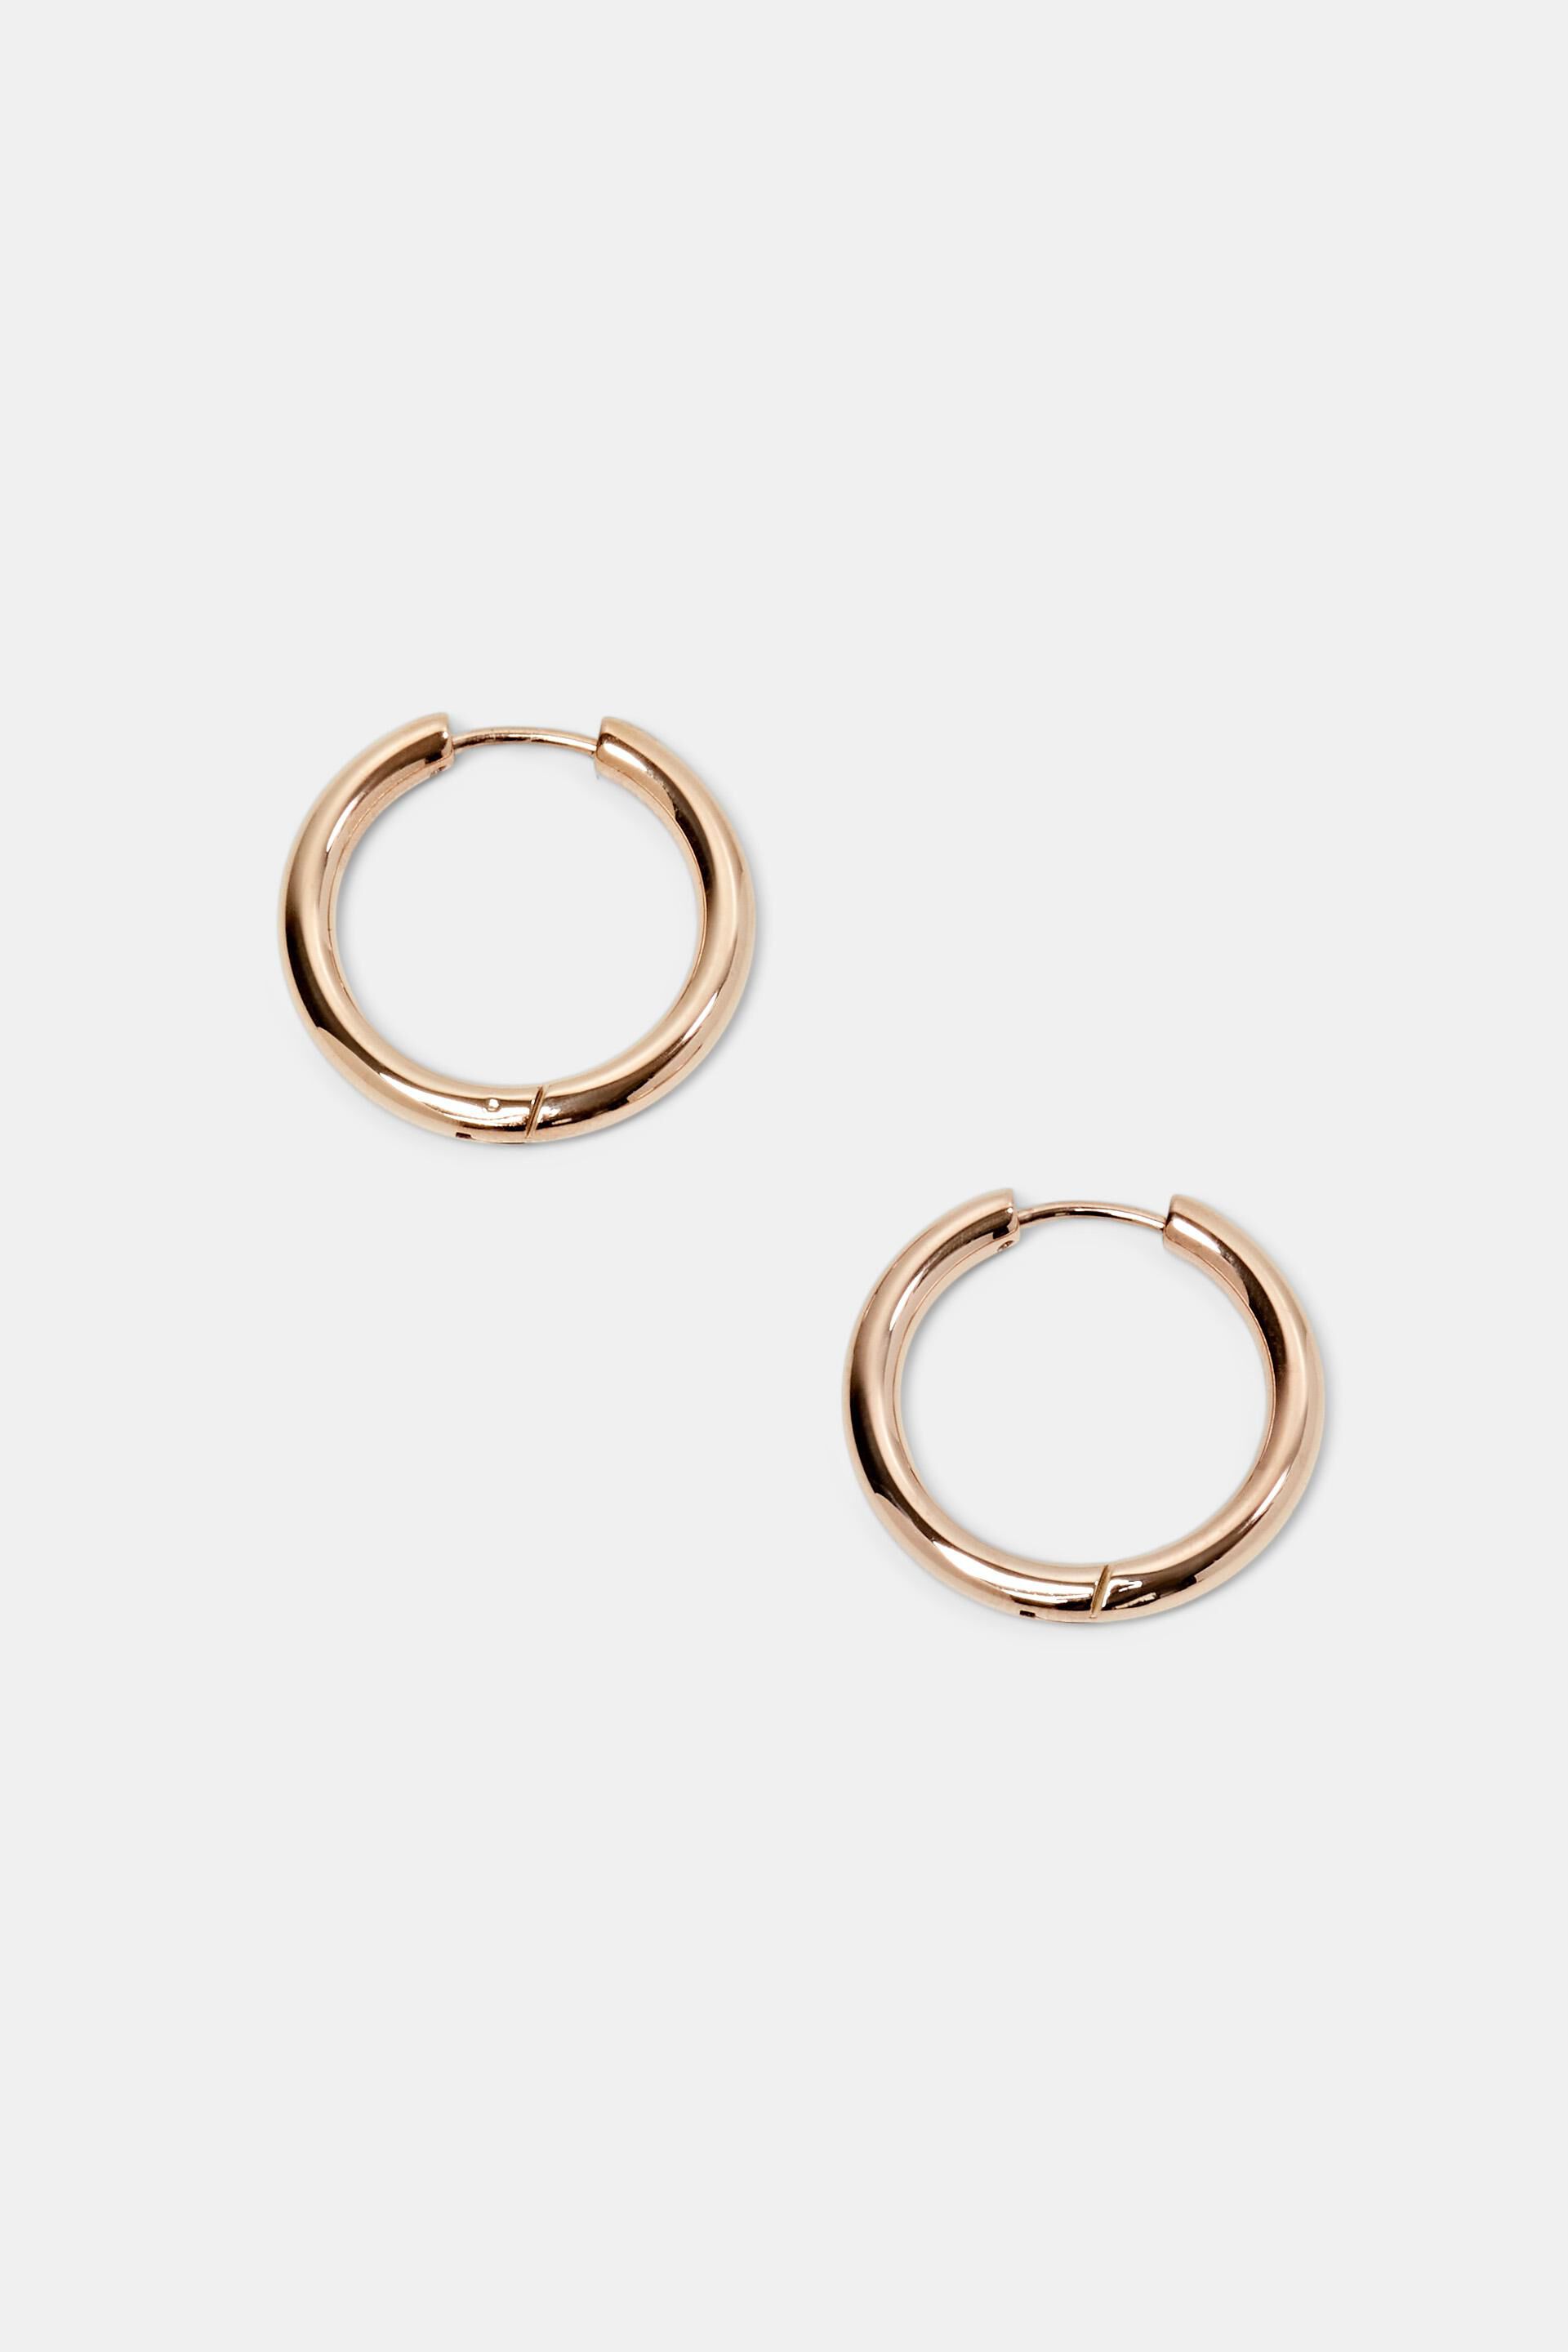 Esprit Small stainless steel earrings, hoop